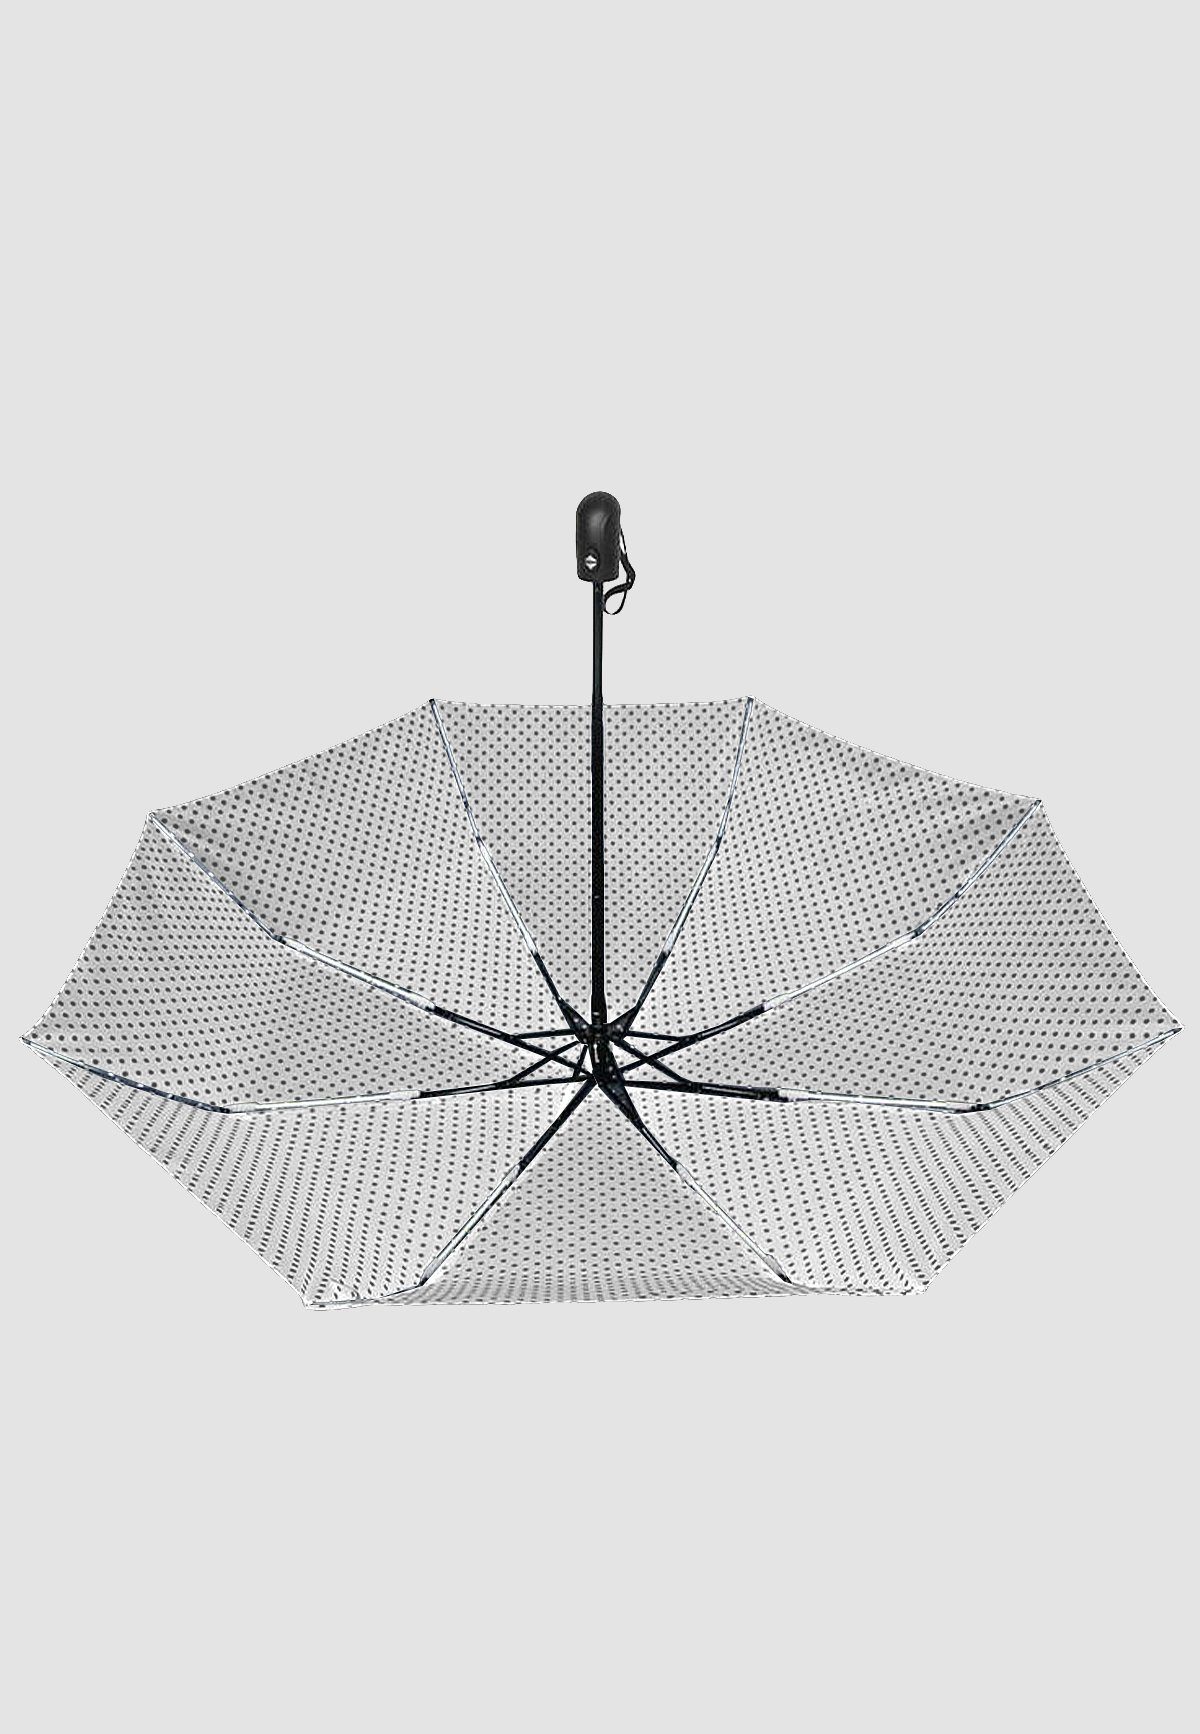 ANELY Taschenregenschirm Basic Automatik in Weiß Regenschirm, 4686